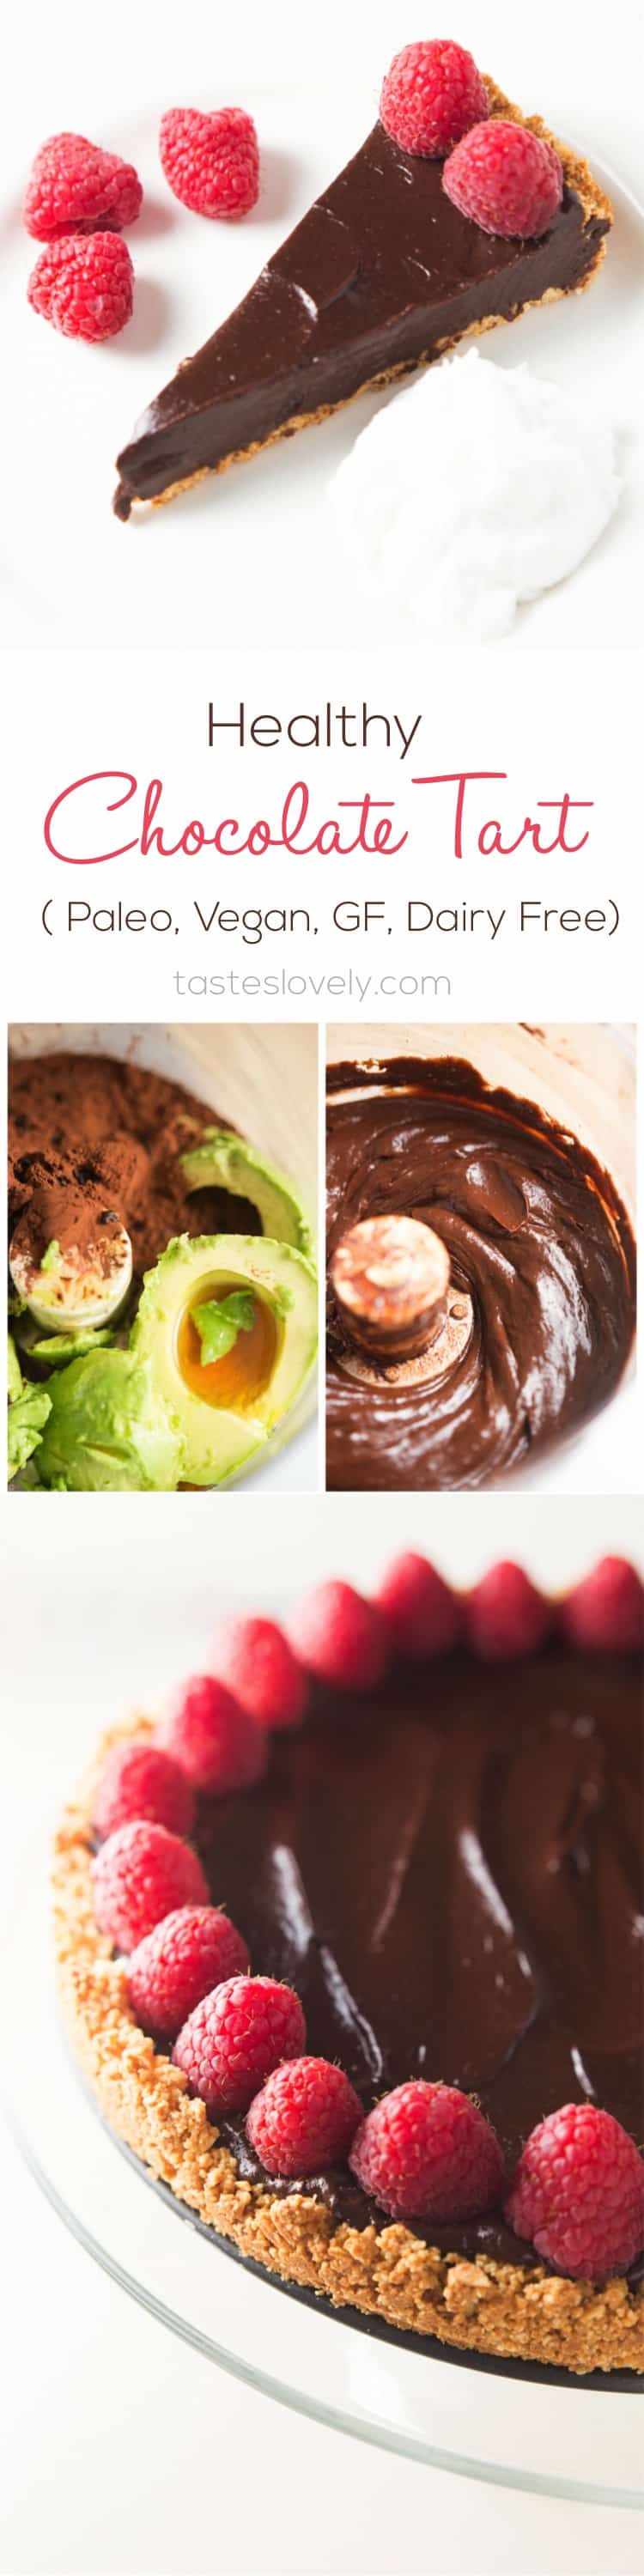 Healthy Chocolate Tart | tasteslovely.com